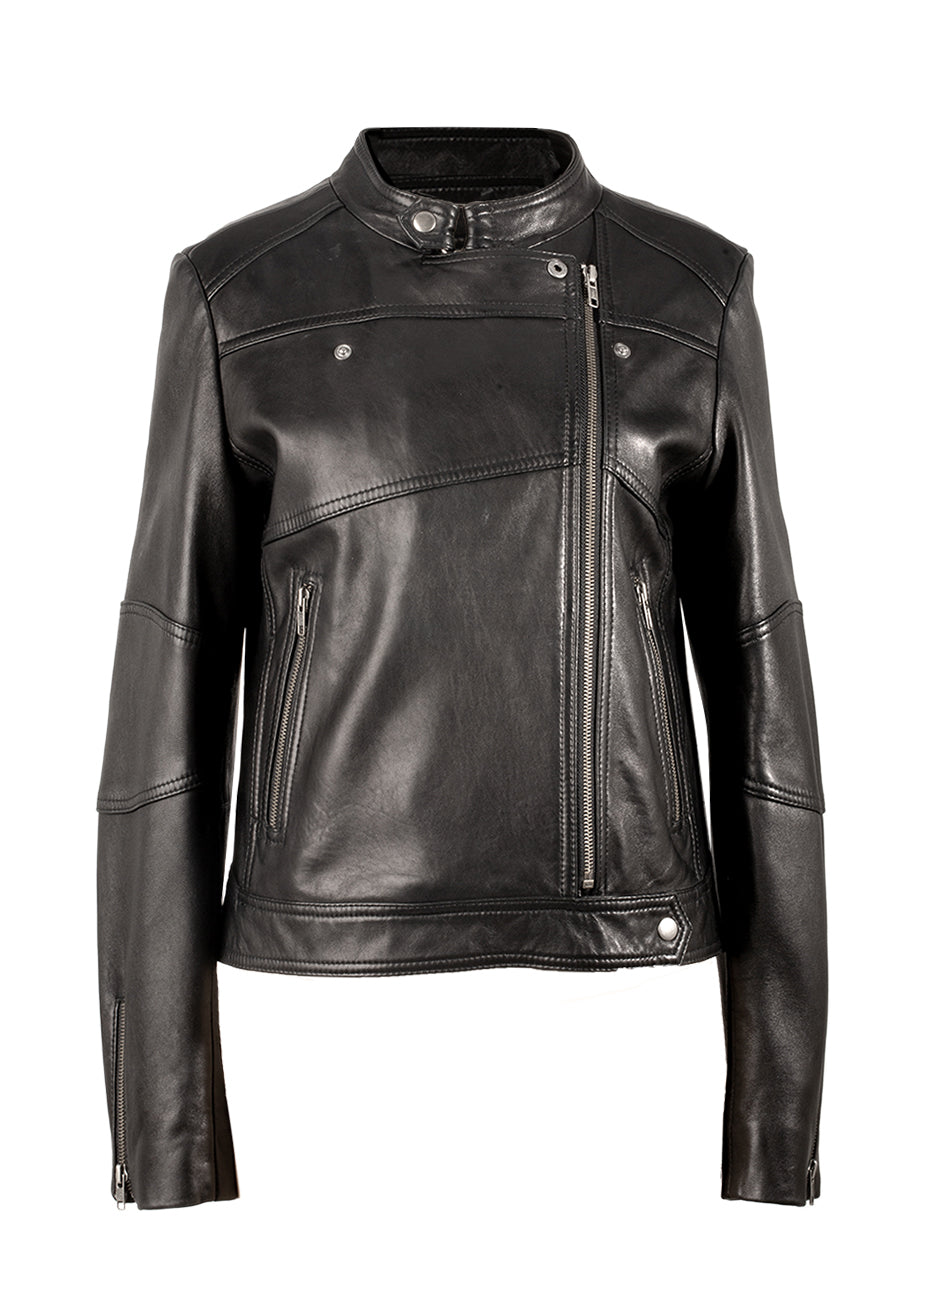 Moto Leather Jacket - Black Pink Tartan